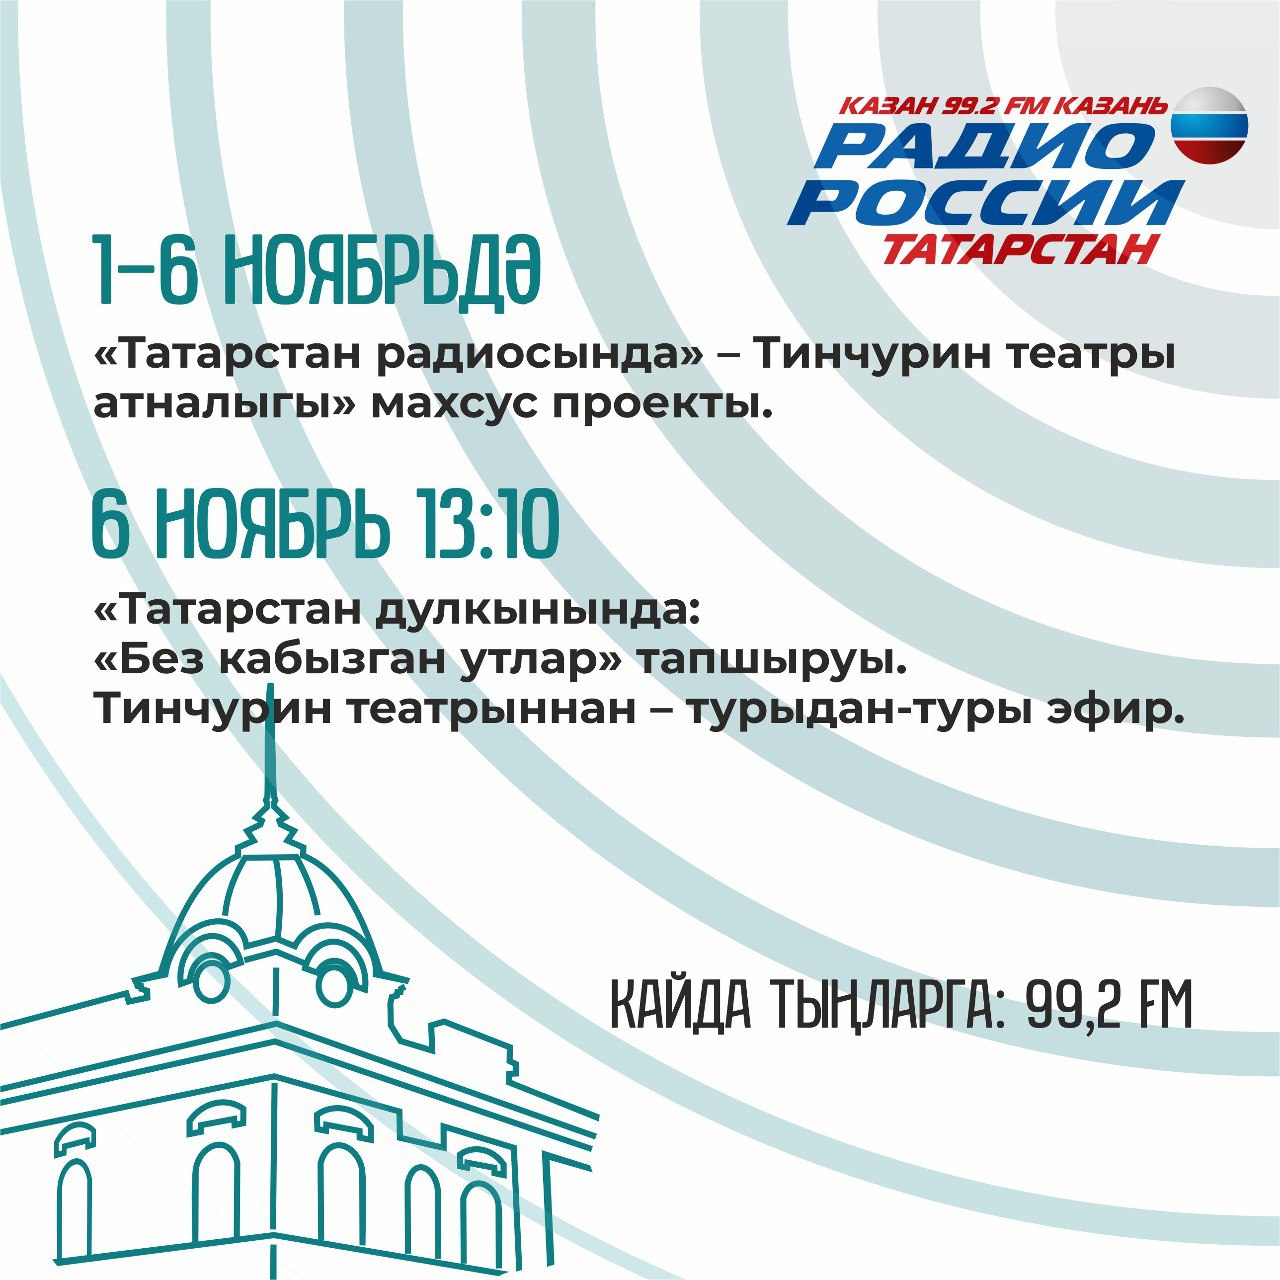 Впервые «Радио Татарстана» в прямом эфире будет вещать из театра Тинчурина